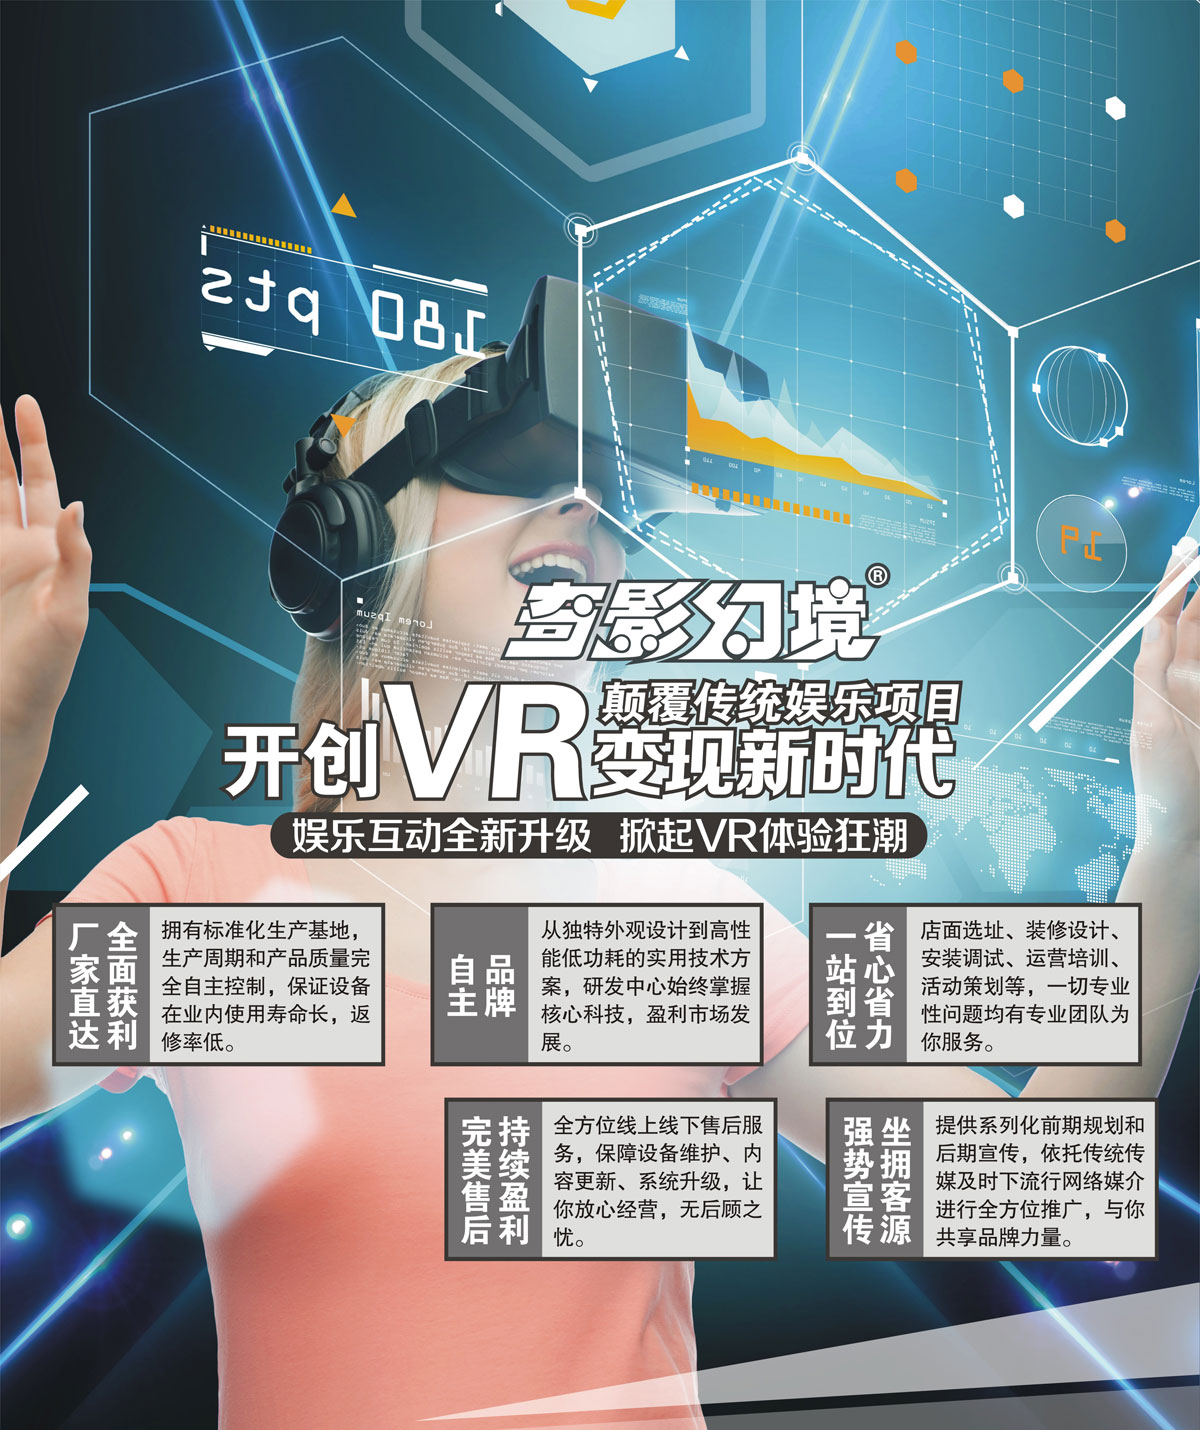 互动电影开创VR变现新时代颠覆传统娱乐项目.jpg